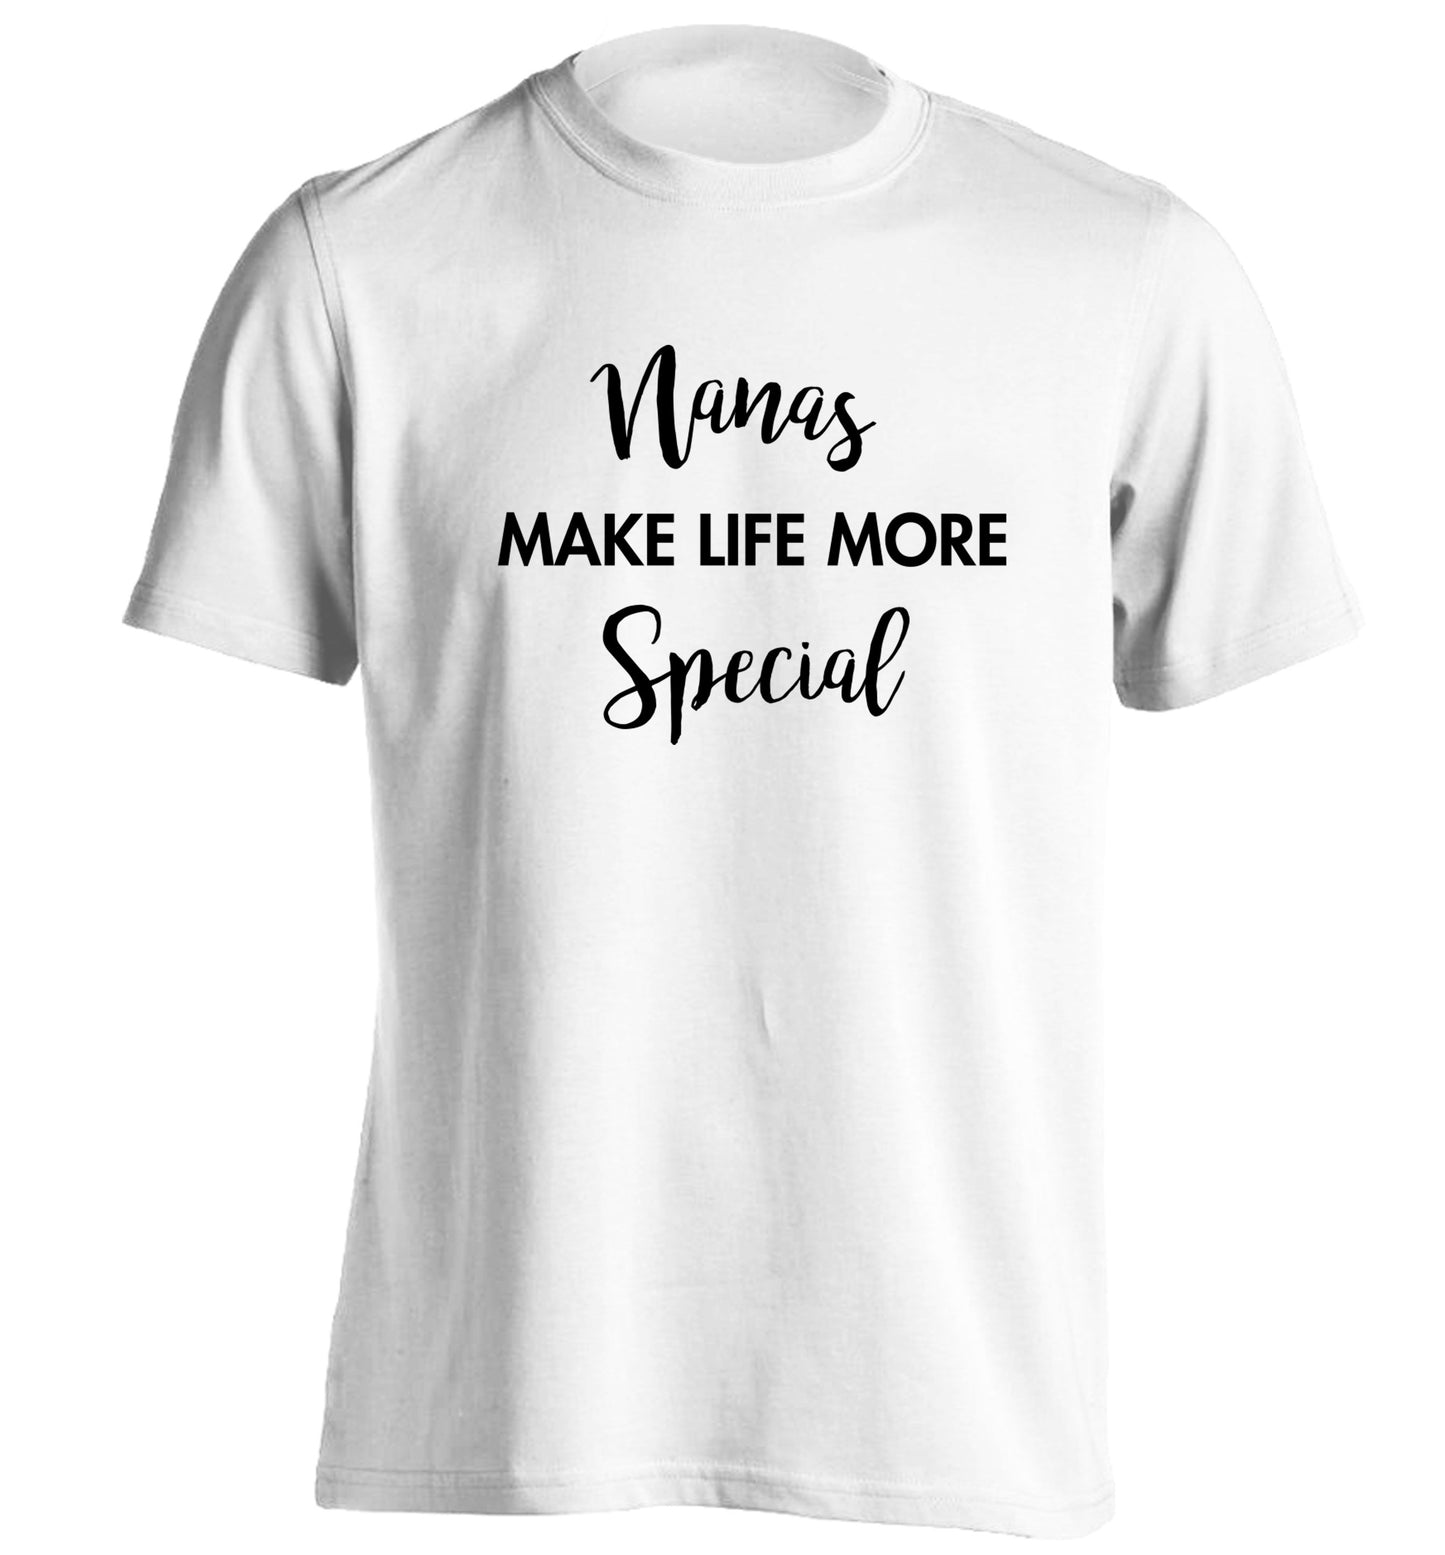 Nanas make life more special adults unisex white Tshirt 2XL